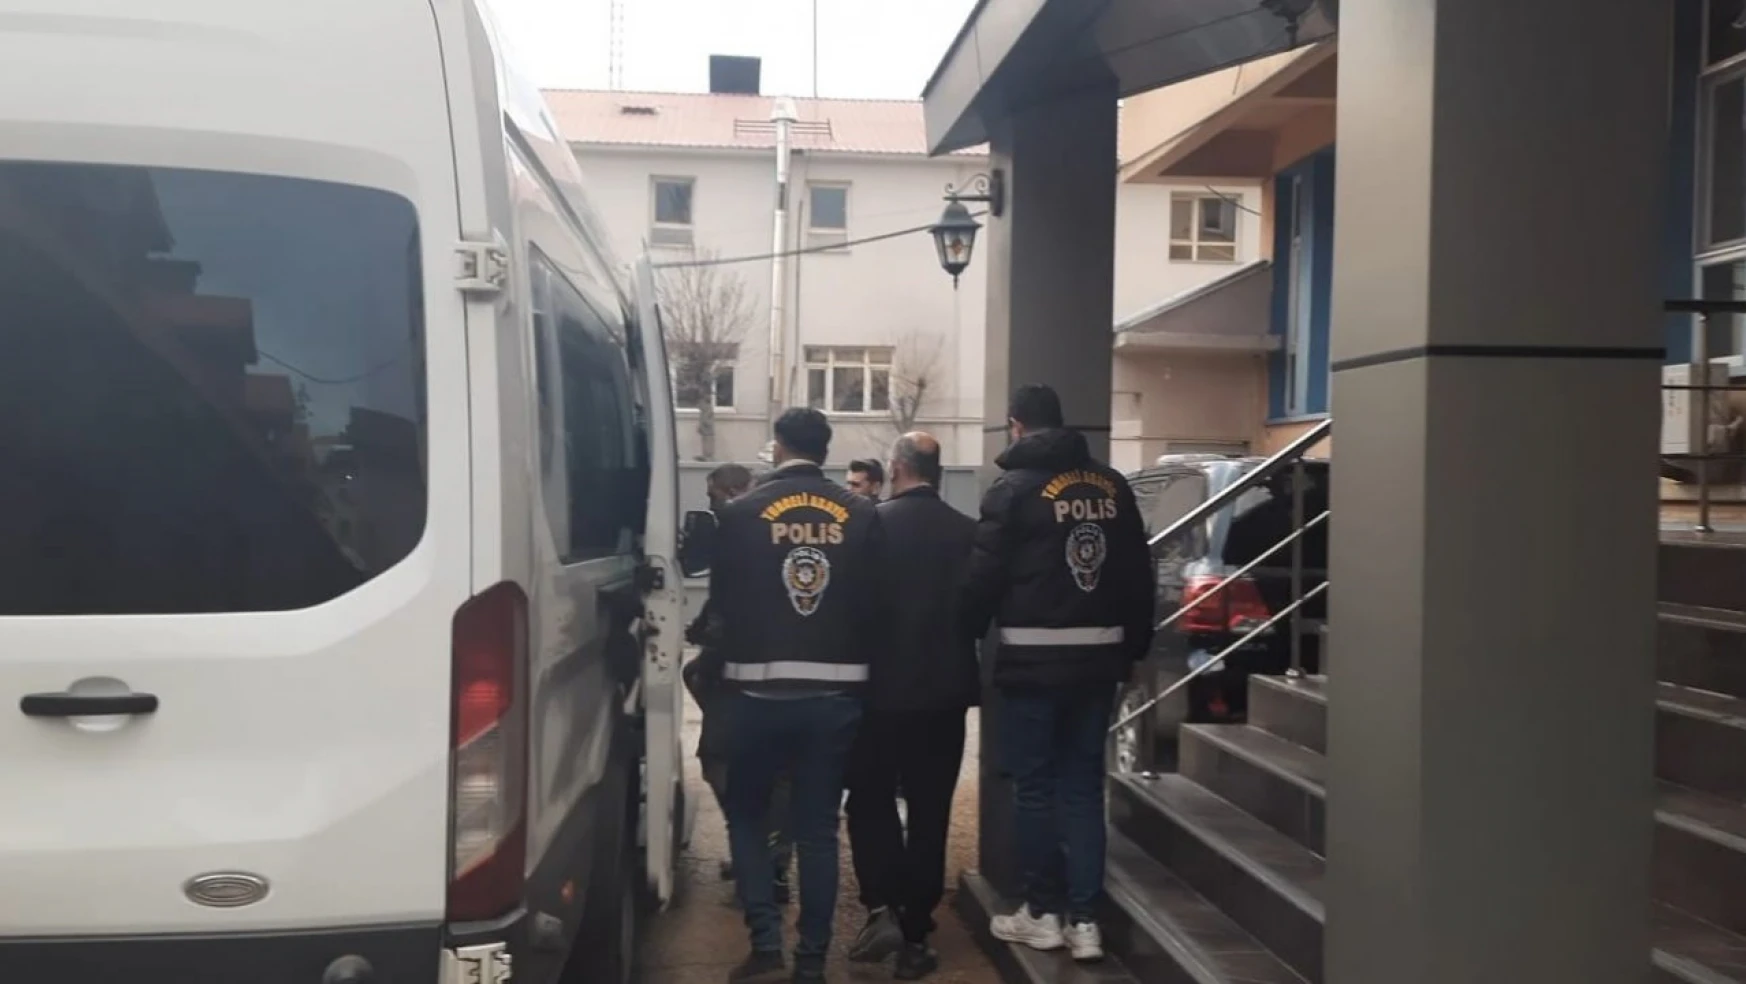 Tunceli'de bir vatandaşı vize vaadiyle dolandıran 3 şahıs tutuklandı